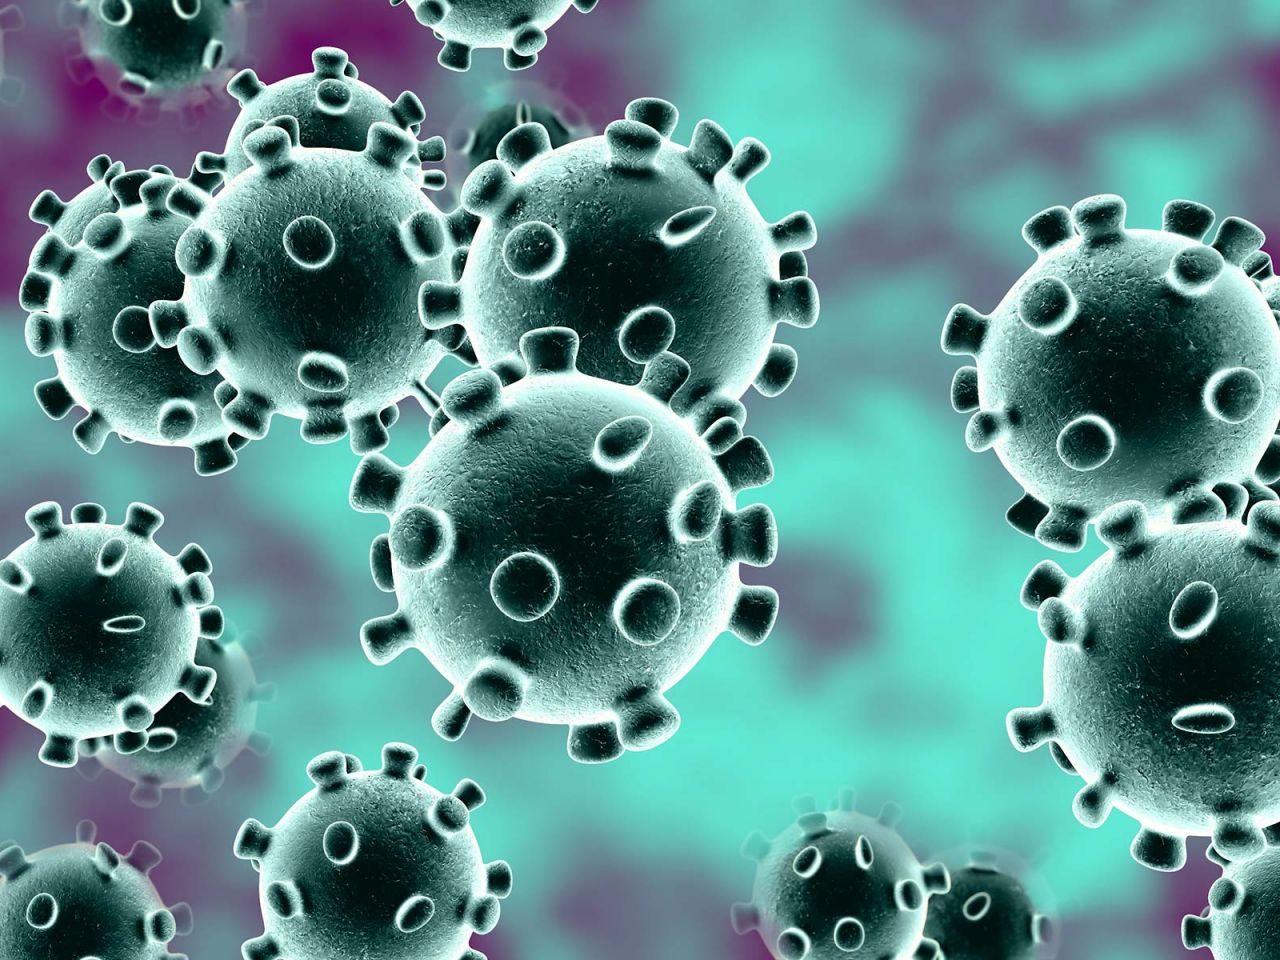 همه چیز در مورد پیدایش، گسترش و پیشگیری از ویروس کرونا